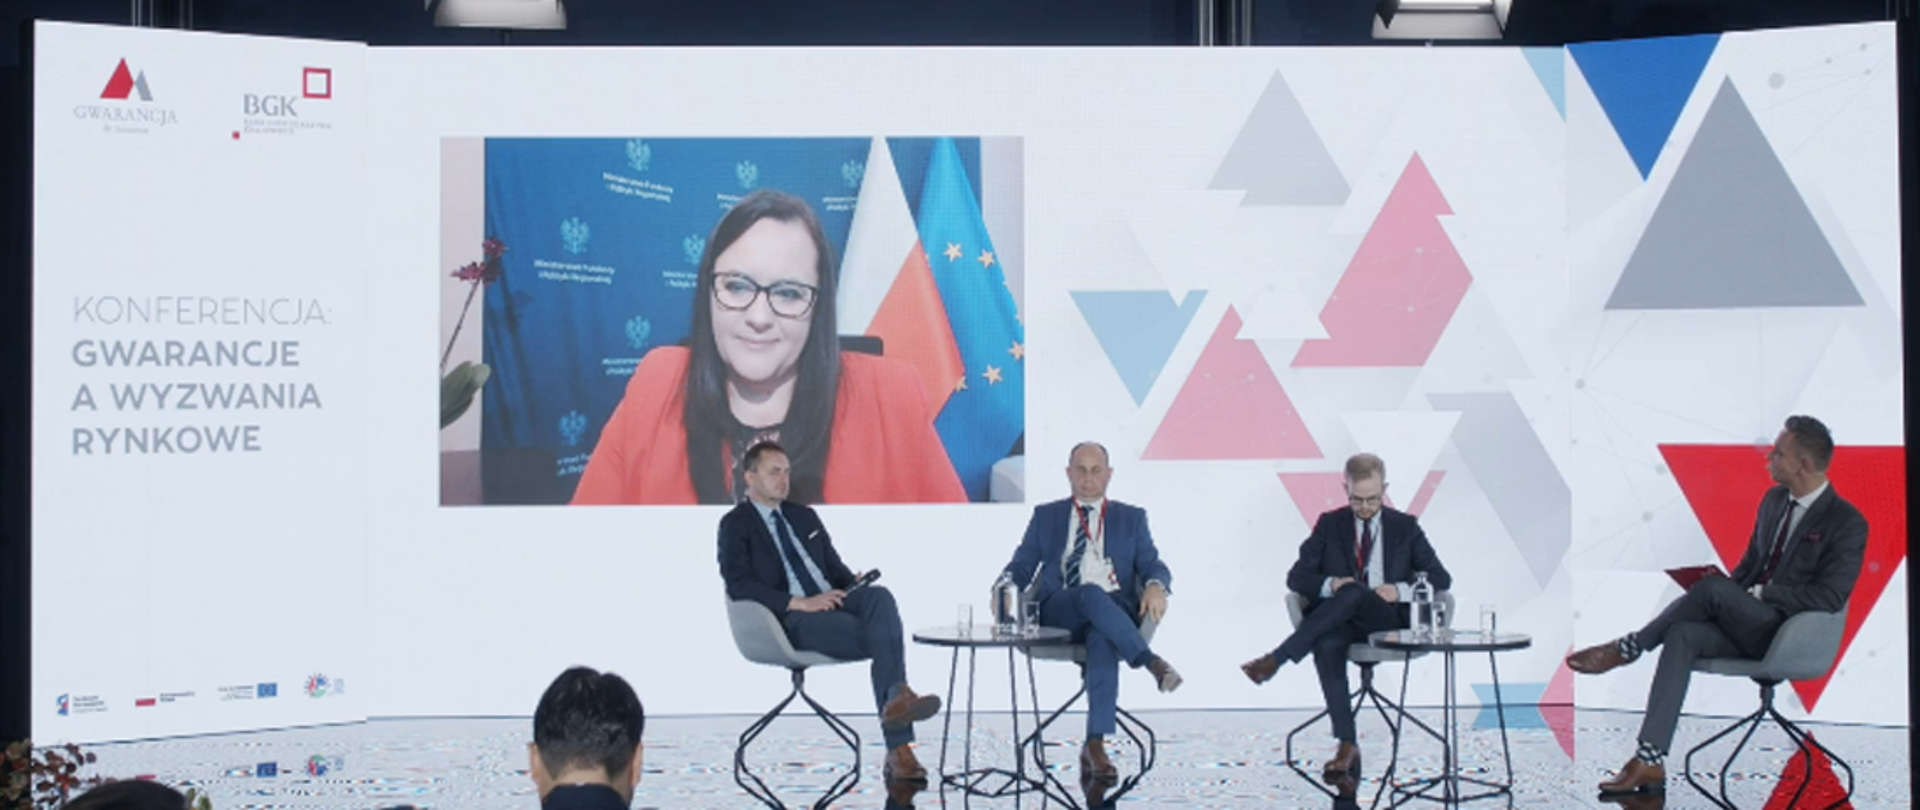 Na scenie siedzi czterech mężczyzn. Za nimi na ekranie wiceminister Małgorzata Jarosińska-Jedynak.